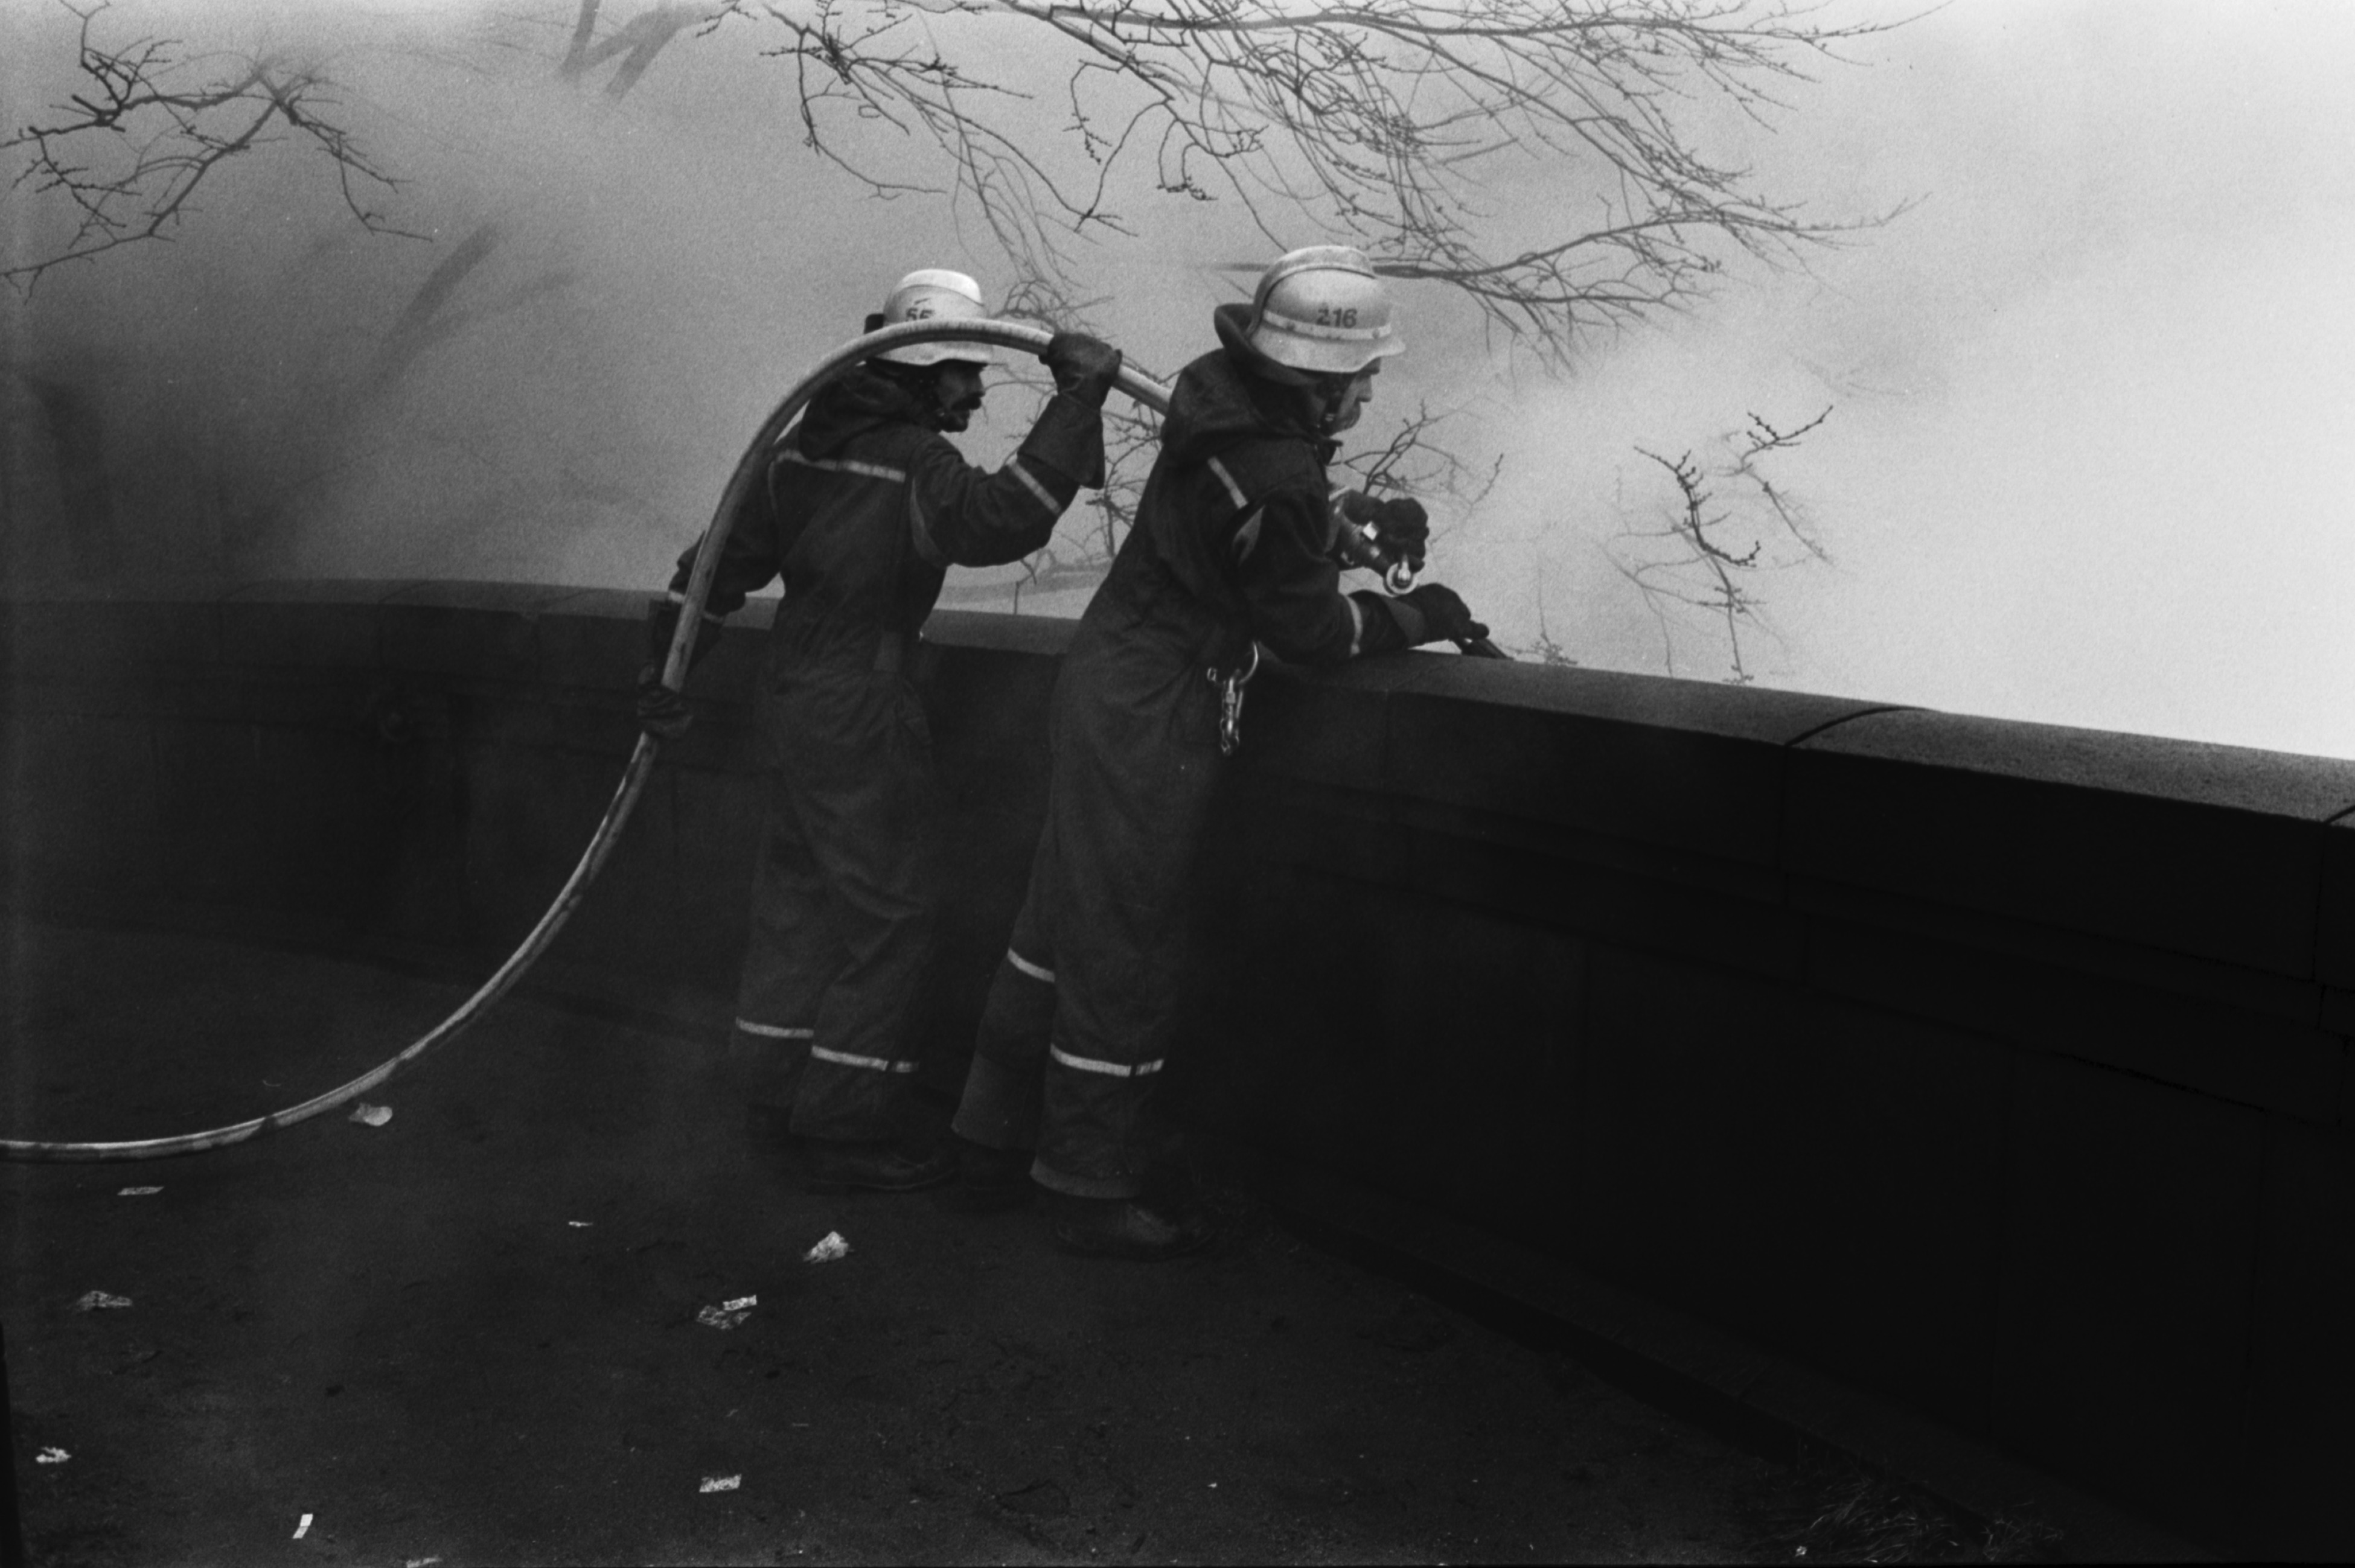 John Stenbergin ranta. Kaksi palomiestä sammuttamassa Kluuvin metroaseman rakennustyömaan pientä tulipaloa Pitkänsillan kupeessa Pitkänsillanrannassa (John Stenbergin rannassa).